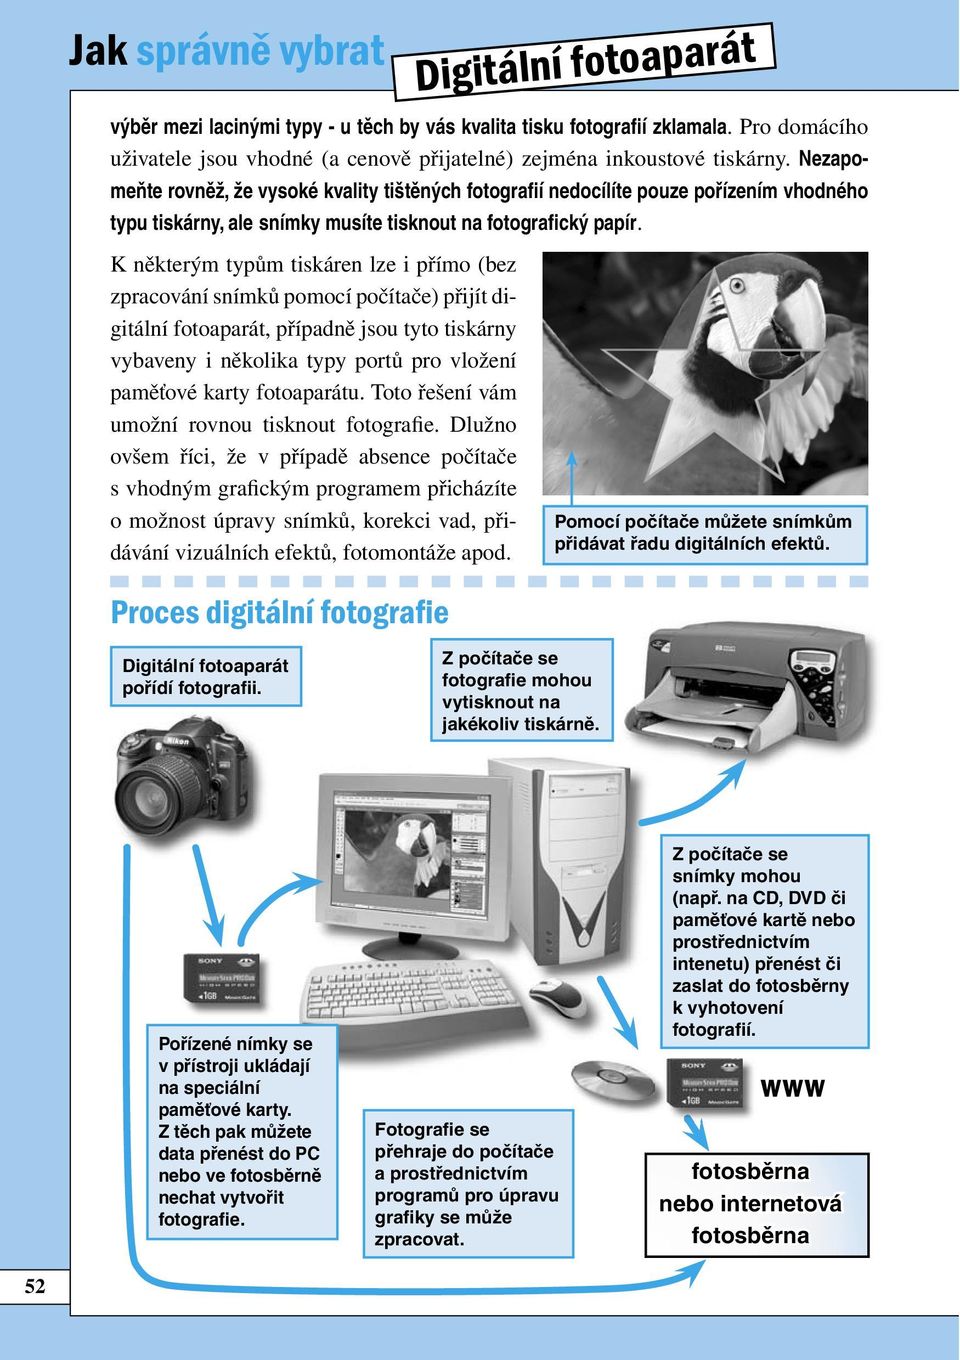 K některým typům tiskáren lze i přímo (bez zpracování snímků pomocí počítače) přijít digitální fotoaparát, případně jsou tyto tiskárny vybaveny i několika typy portů pro vložení paměťové karty